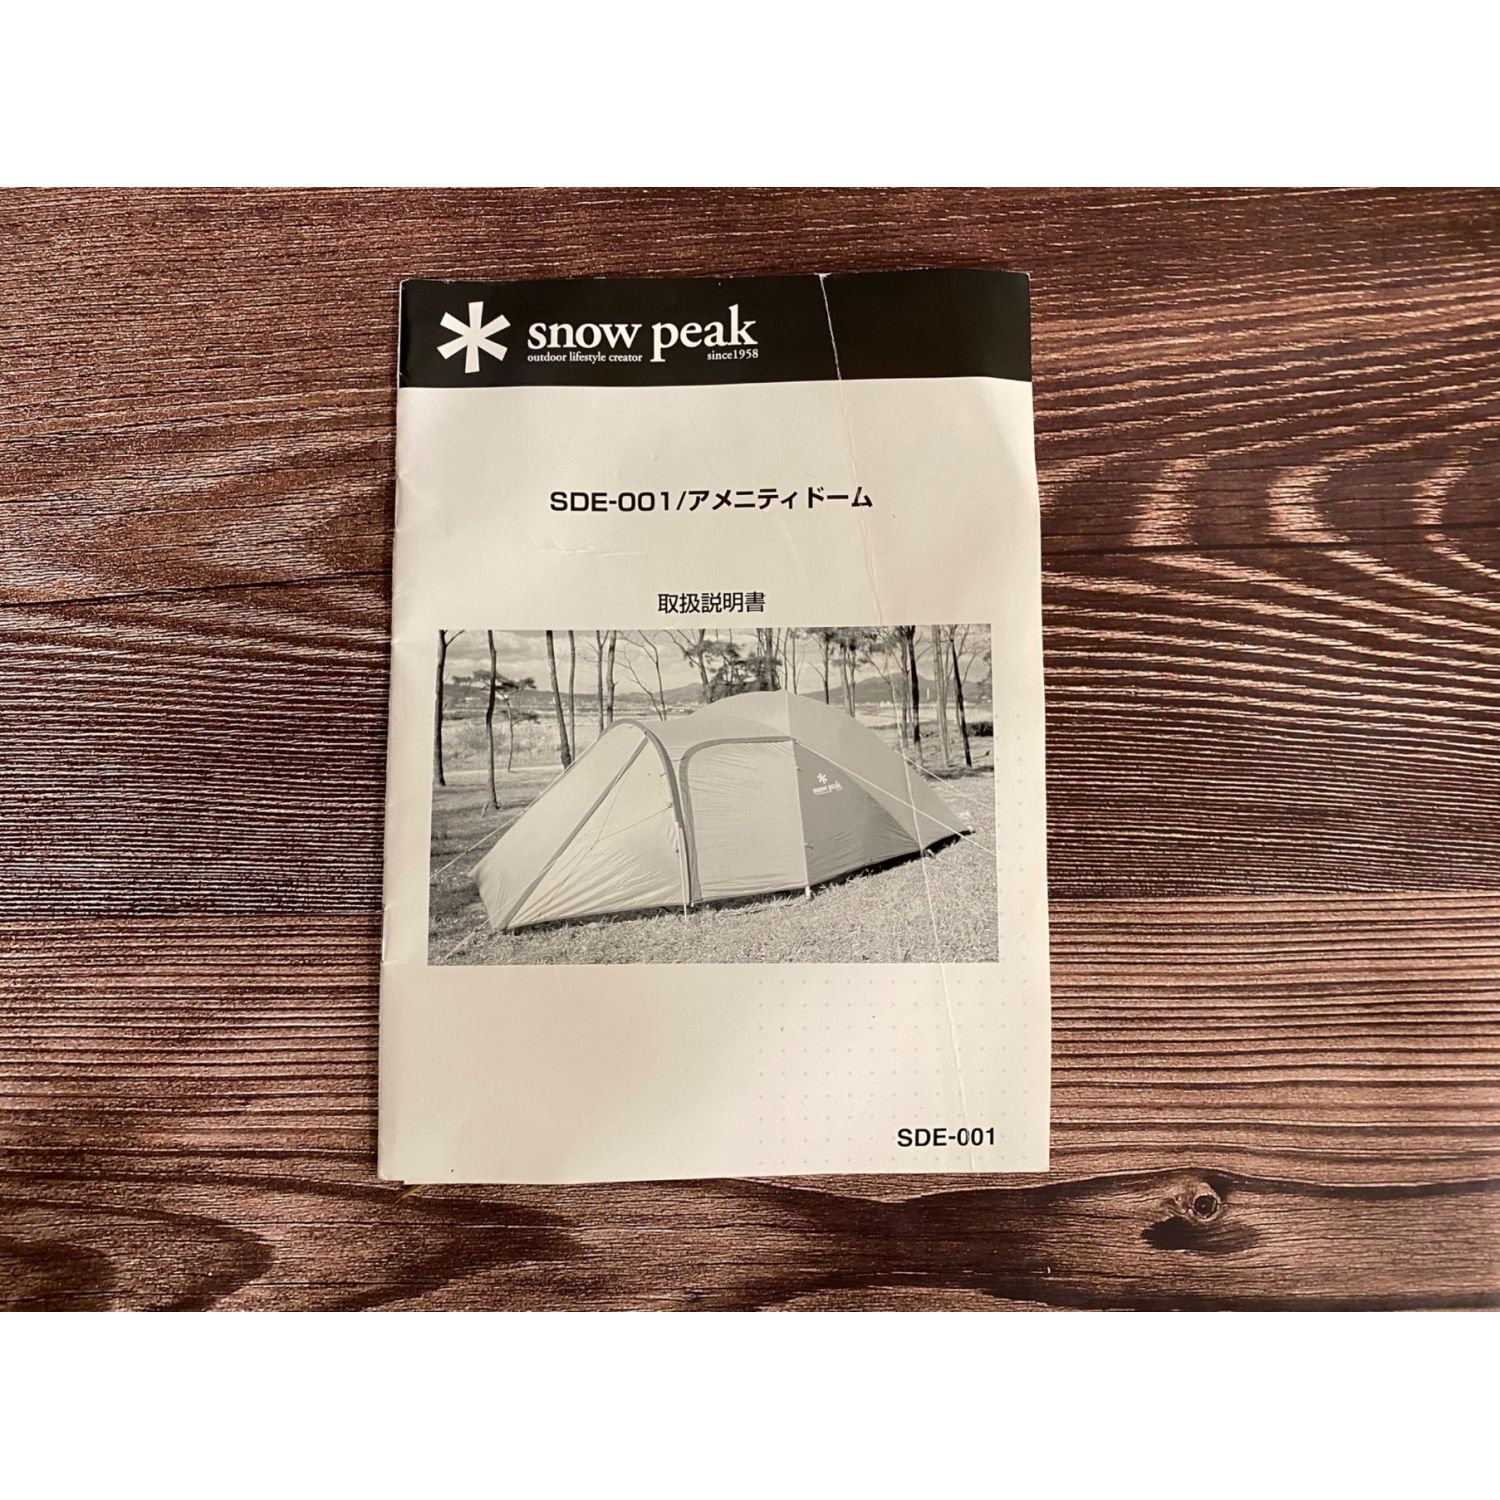 Snow peak (スノーピーク) アメニティドームM 別売りアップライト